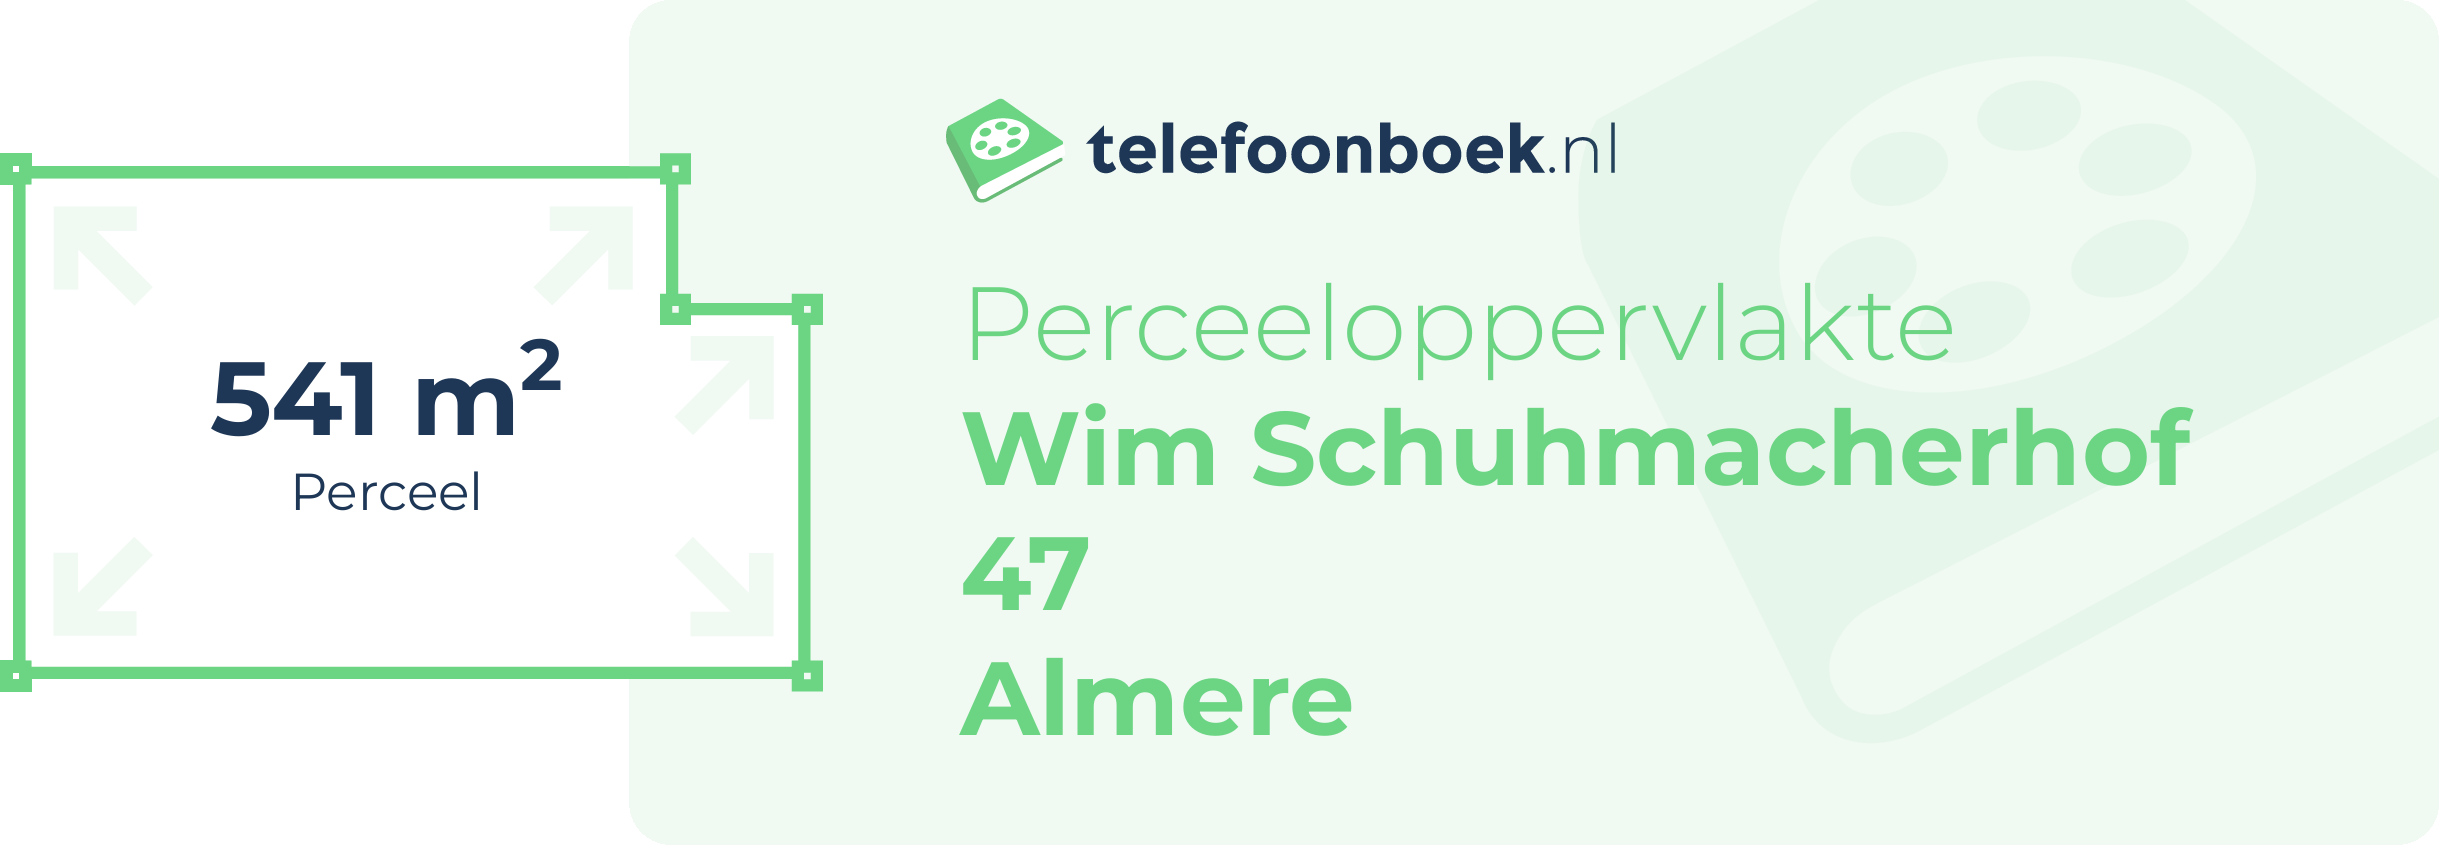 Perceeloppervlakte Wim Schuhmacherhof 47 Almere